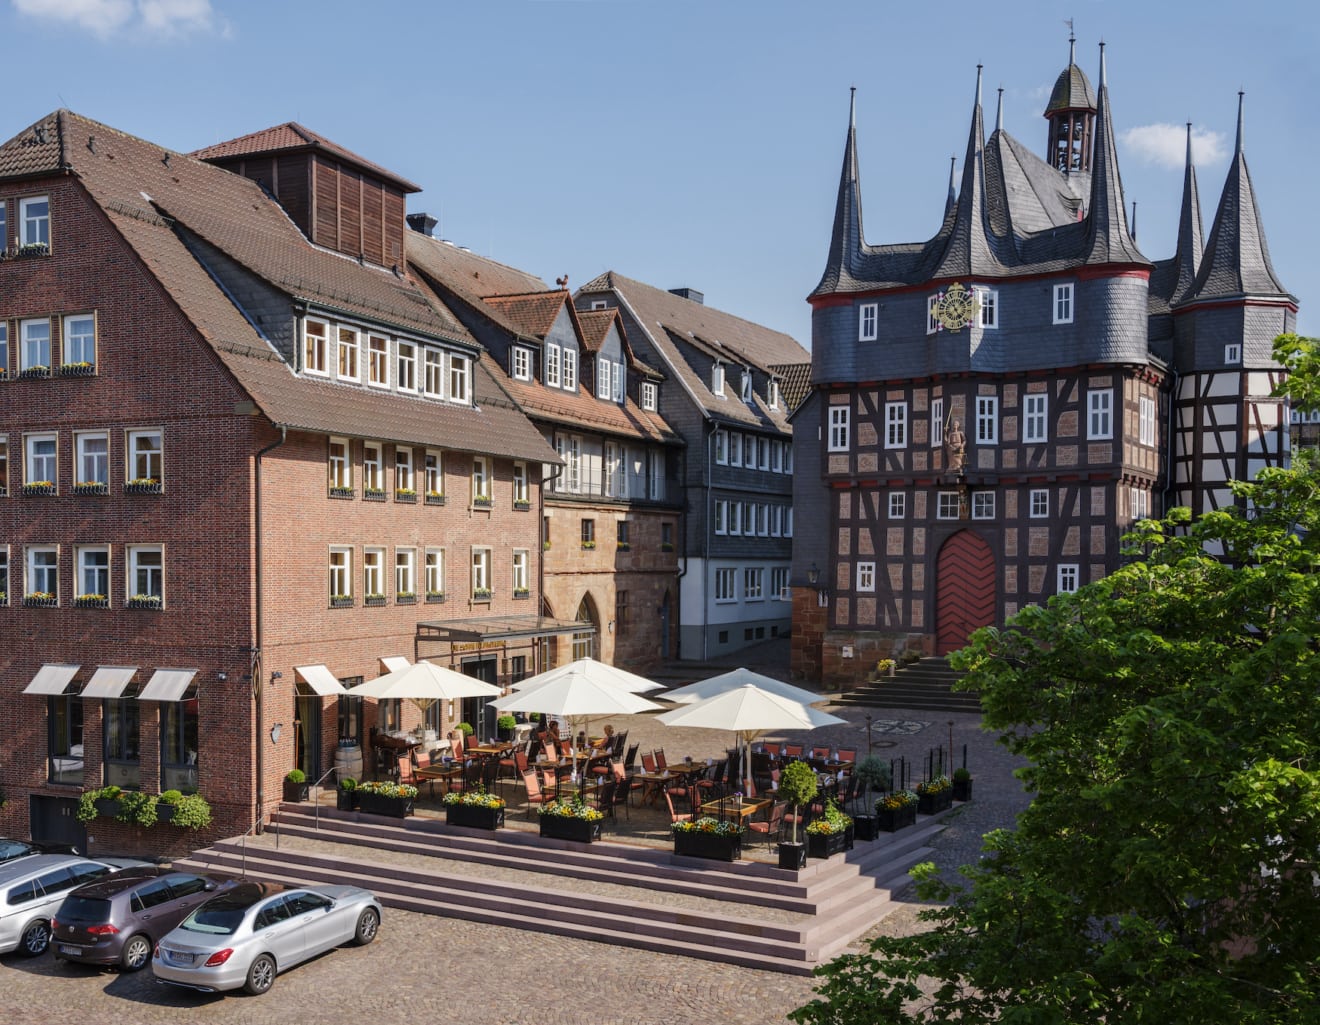 Außenansicht des Hotels Die Sonne Frankenberg mit historischem Rathaus